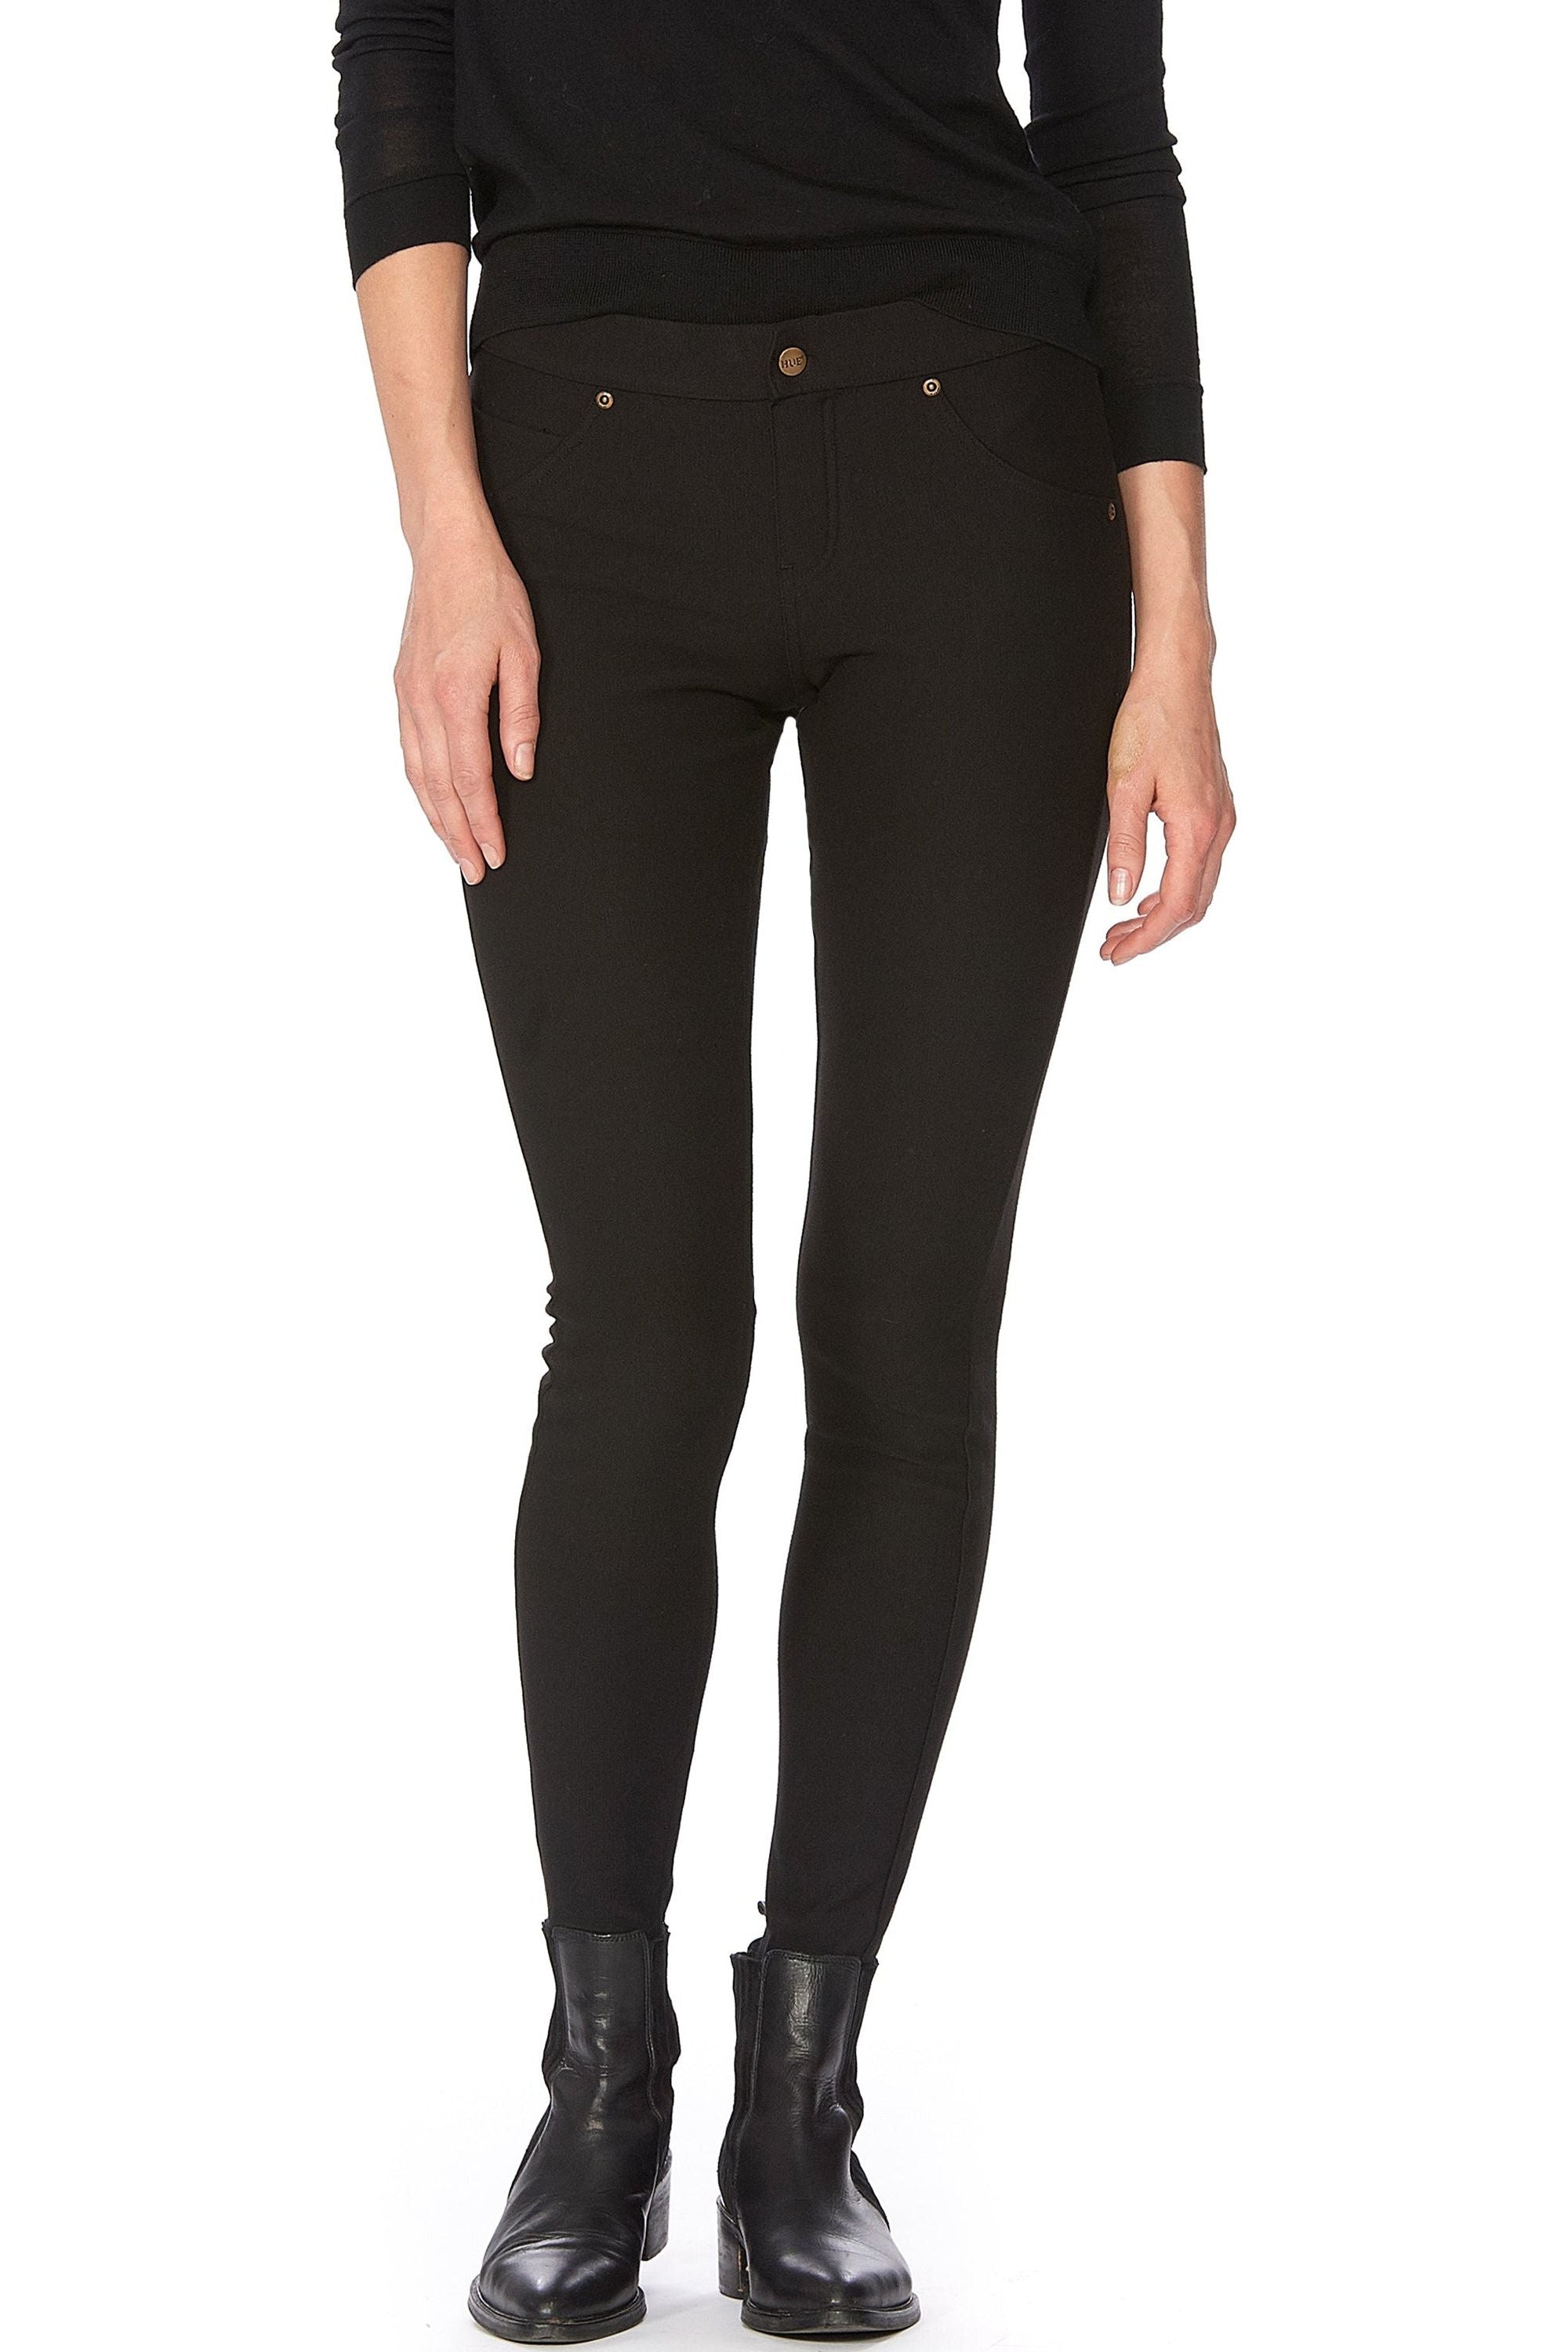 HUE Fleece-Lined Denim Leggings - Style 21254, front, black